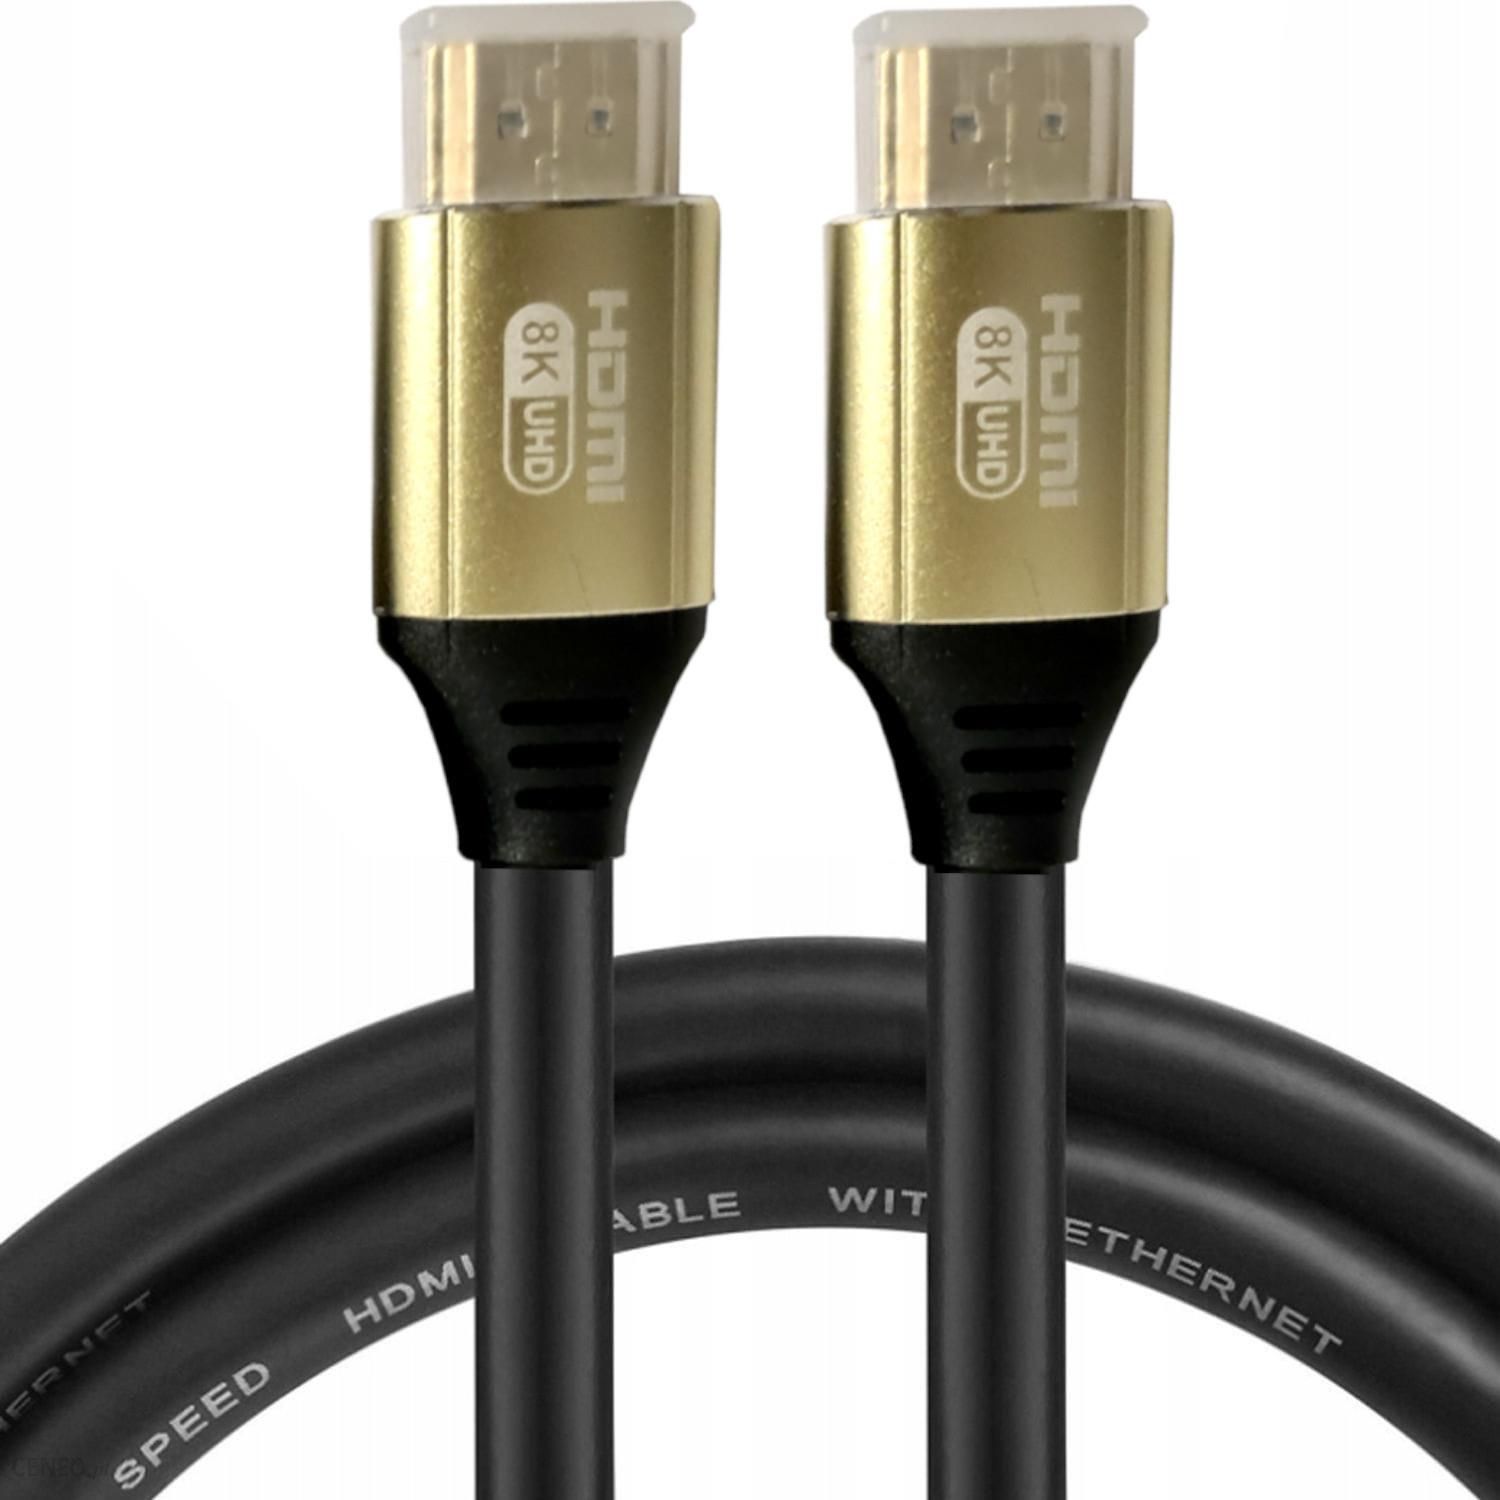 Câble HDMI GEMBIRD CCB-HDMIL-7.5M